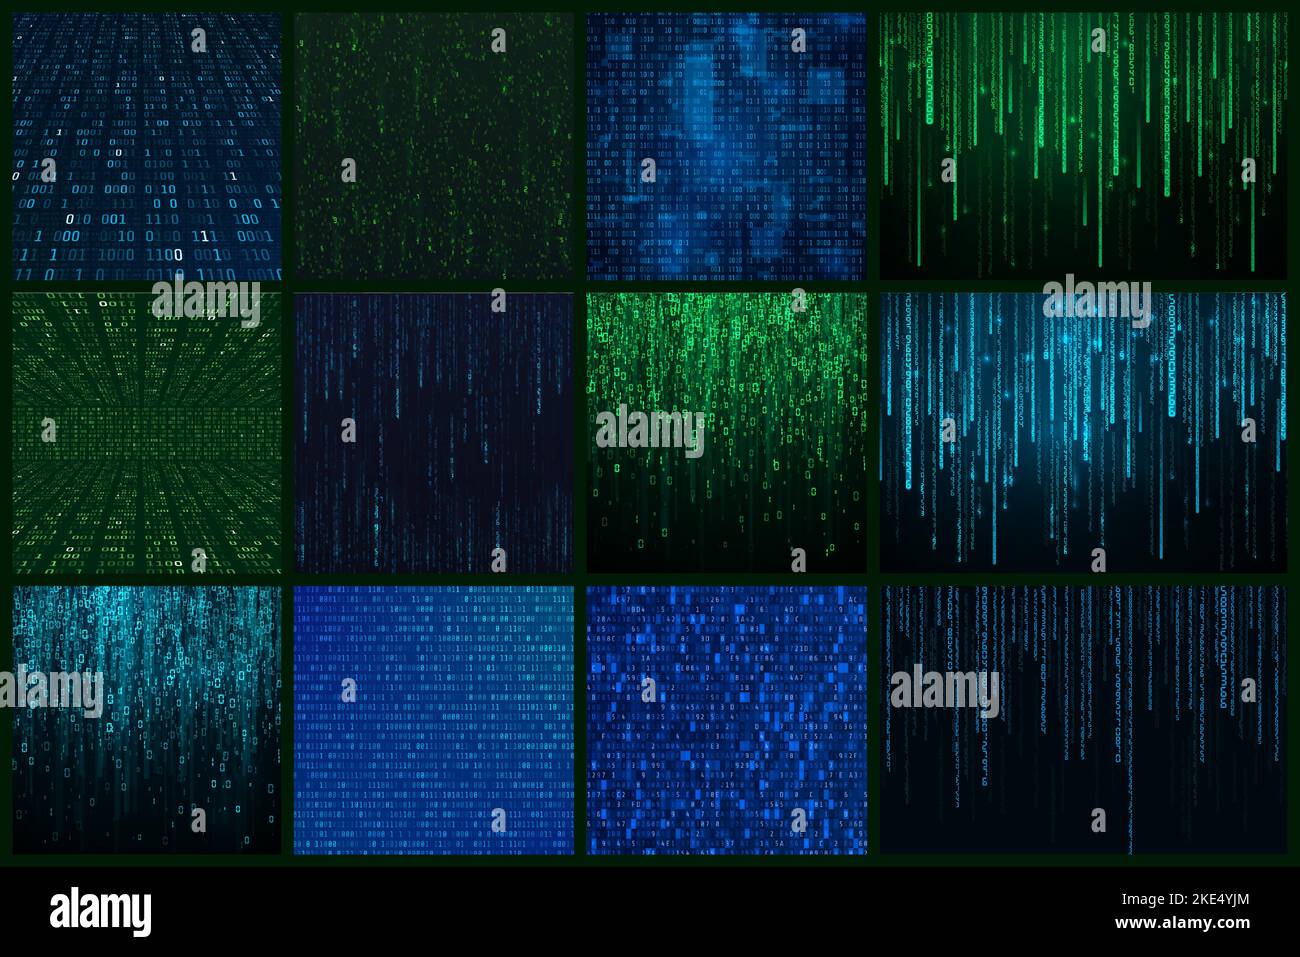 Futuristischer abstrakter Hintergrund im Matrix-Stil. Sci Fi-Hintergrund. Zufällig generierter binärer Datenstrom in grünen und blauen Farben. Vektorgrafik Stock Vektor